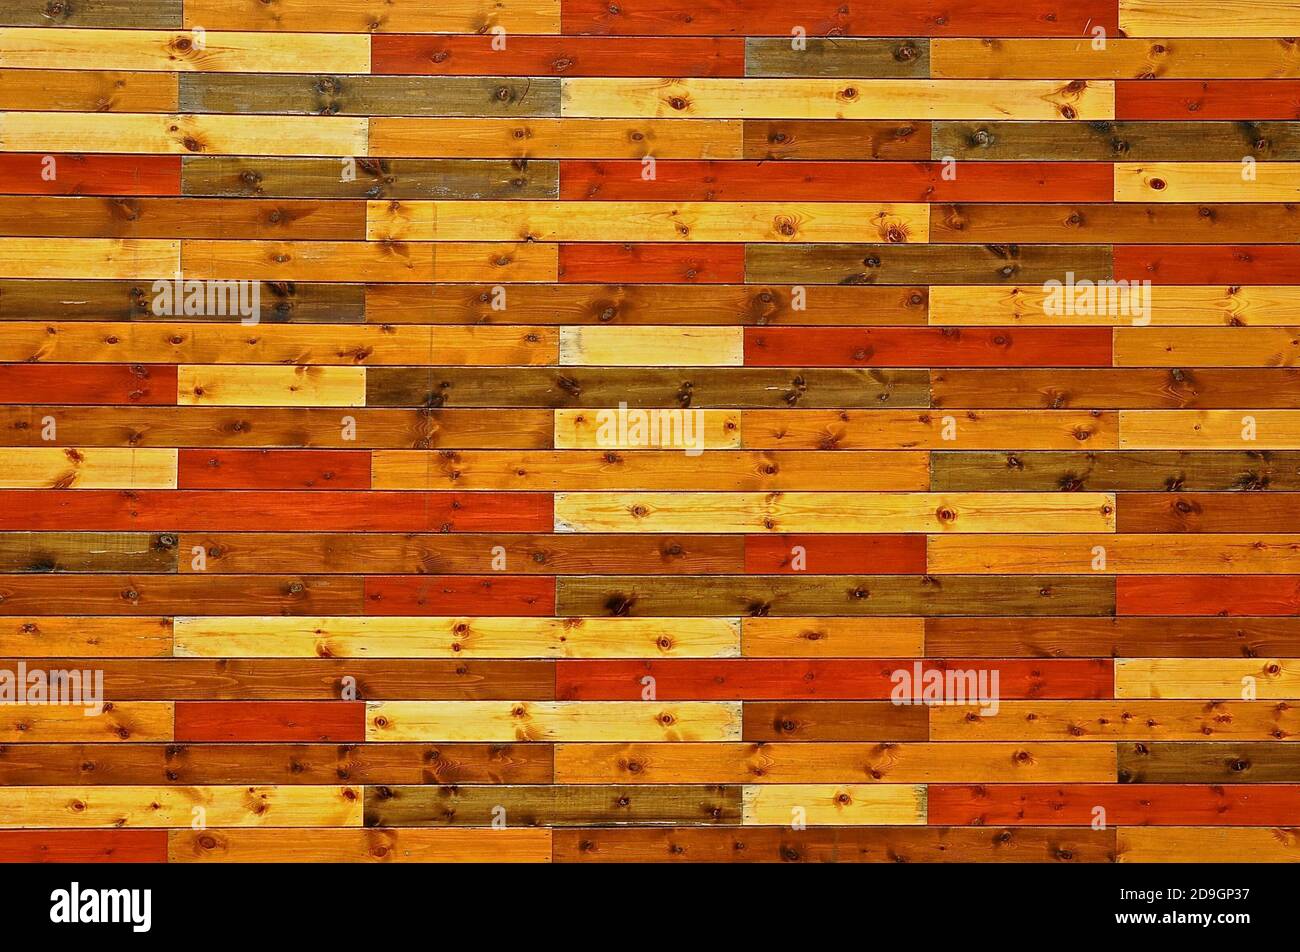 Getäfelte Wände mit rustikalen, geknüpften Holzlatten in verschiedenen herbstlichen Farben. Stockfoto